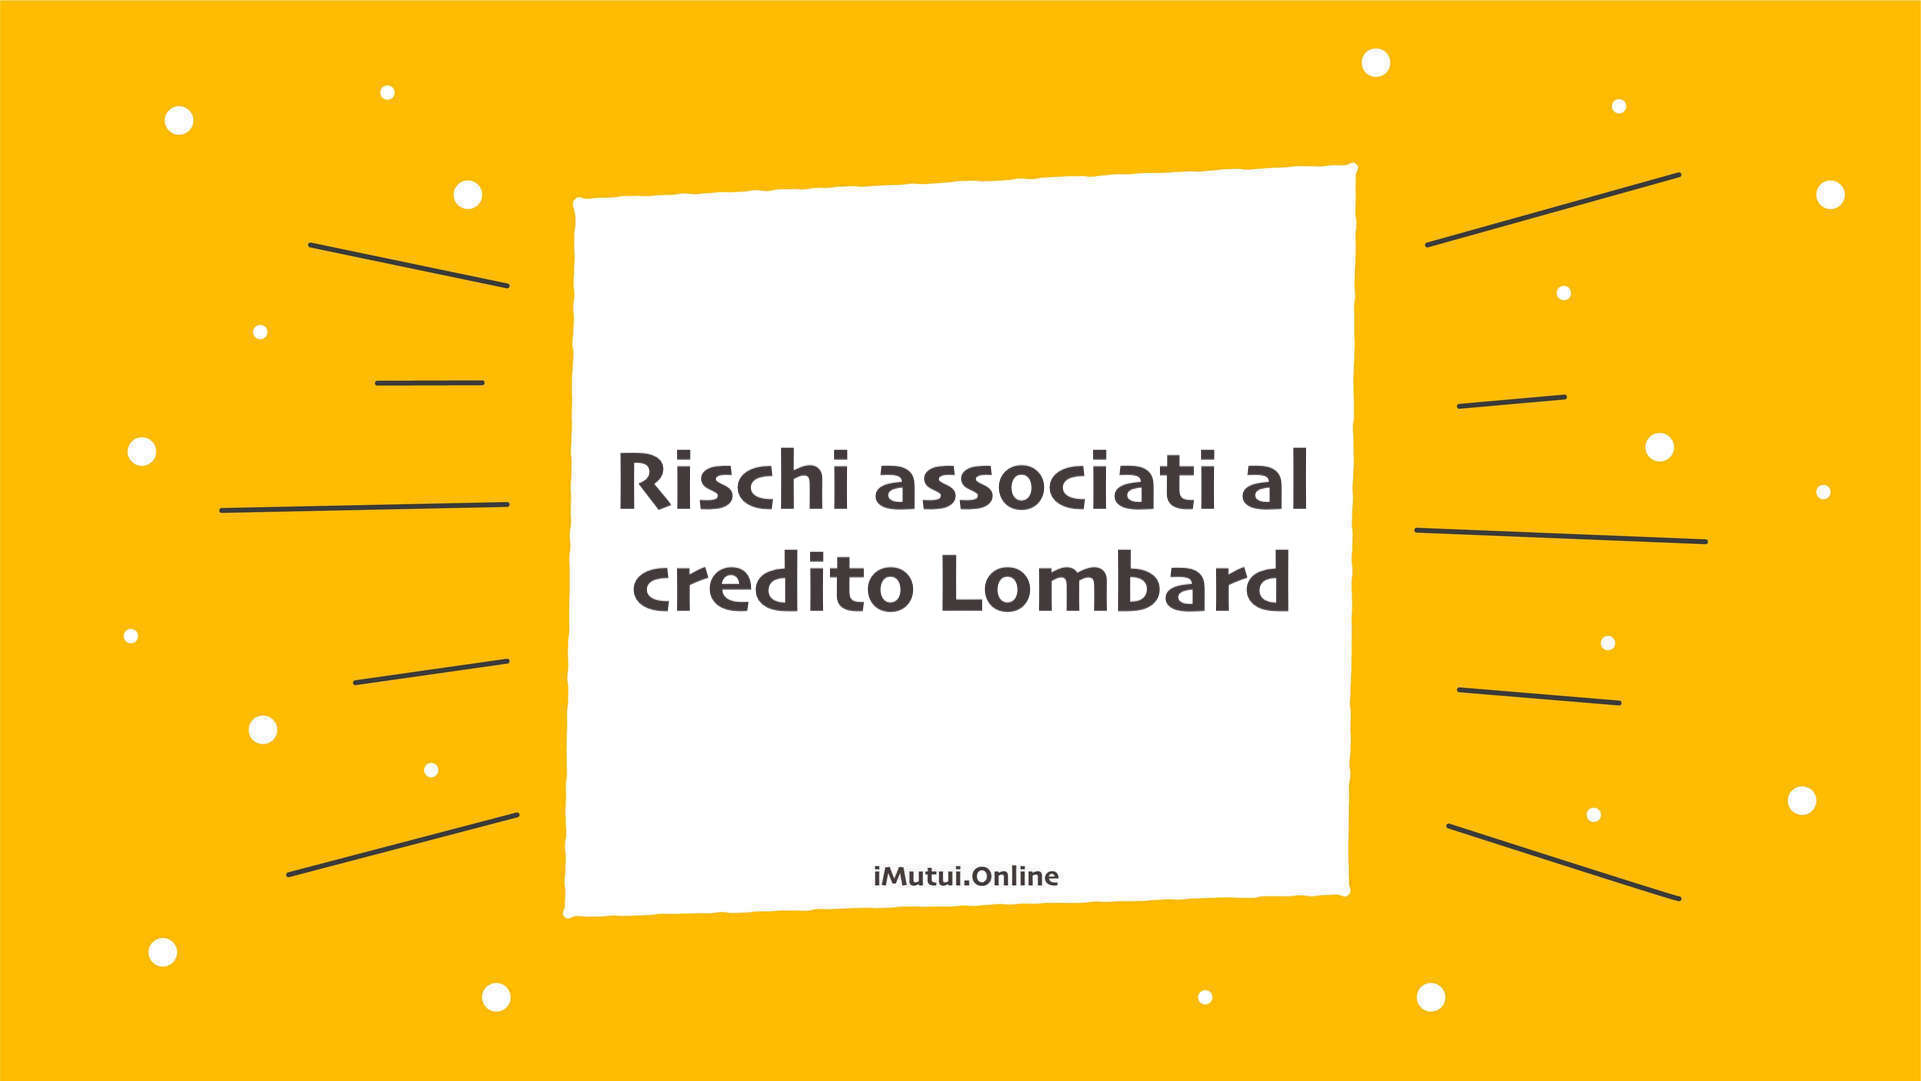 Rischi associati al credito Lombard